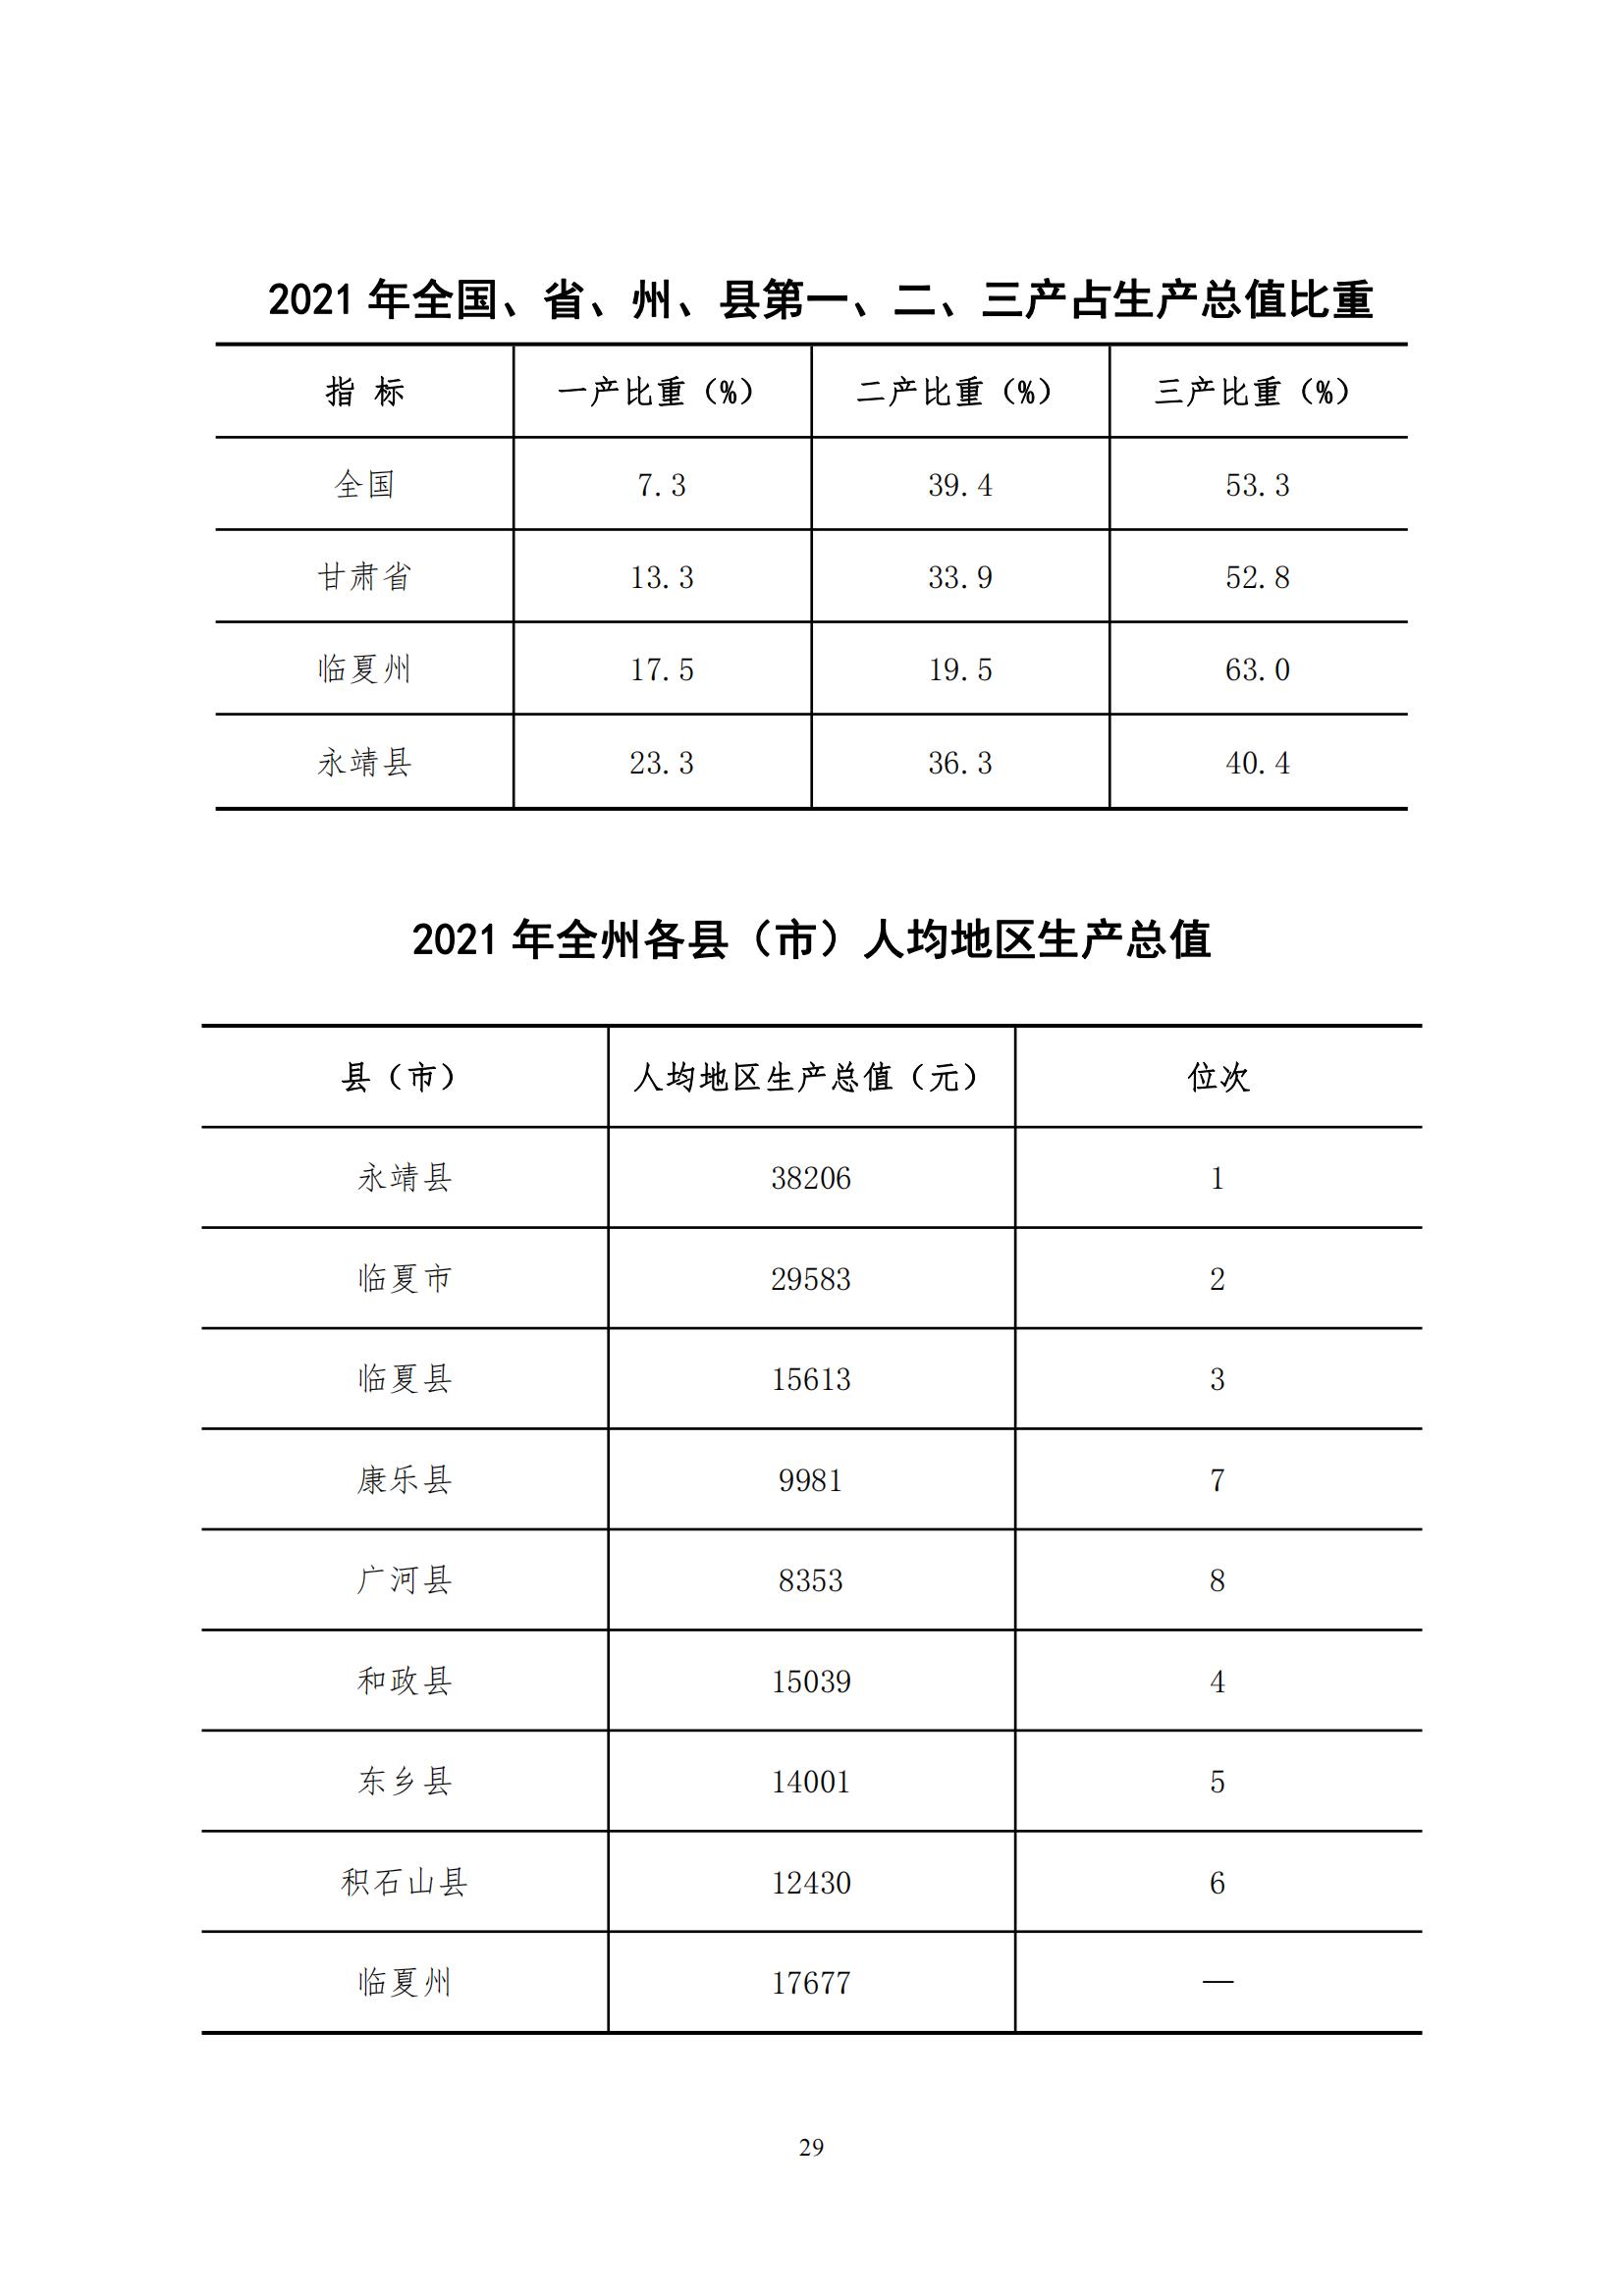 2021年永靖县国民经济和社会发展统计公报_28.jpg